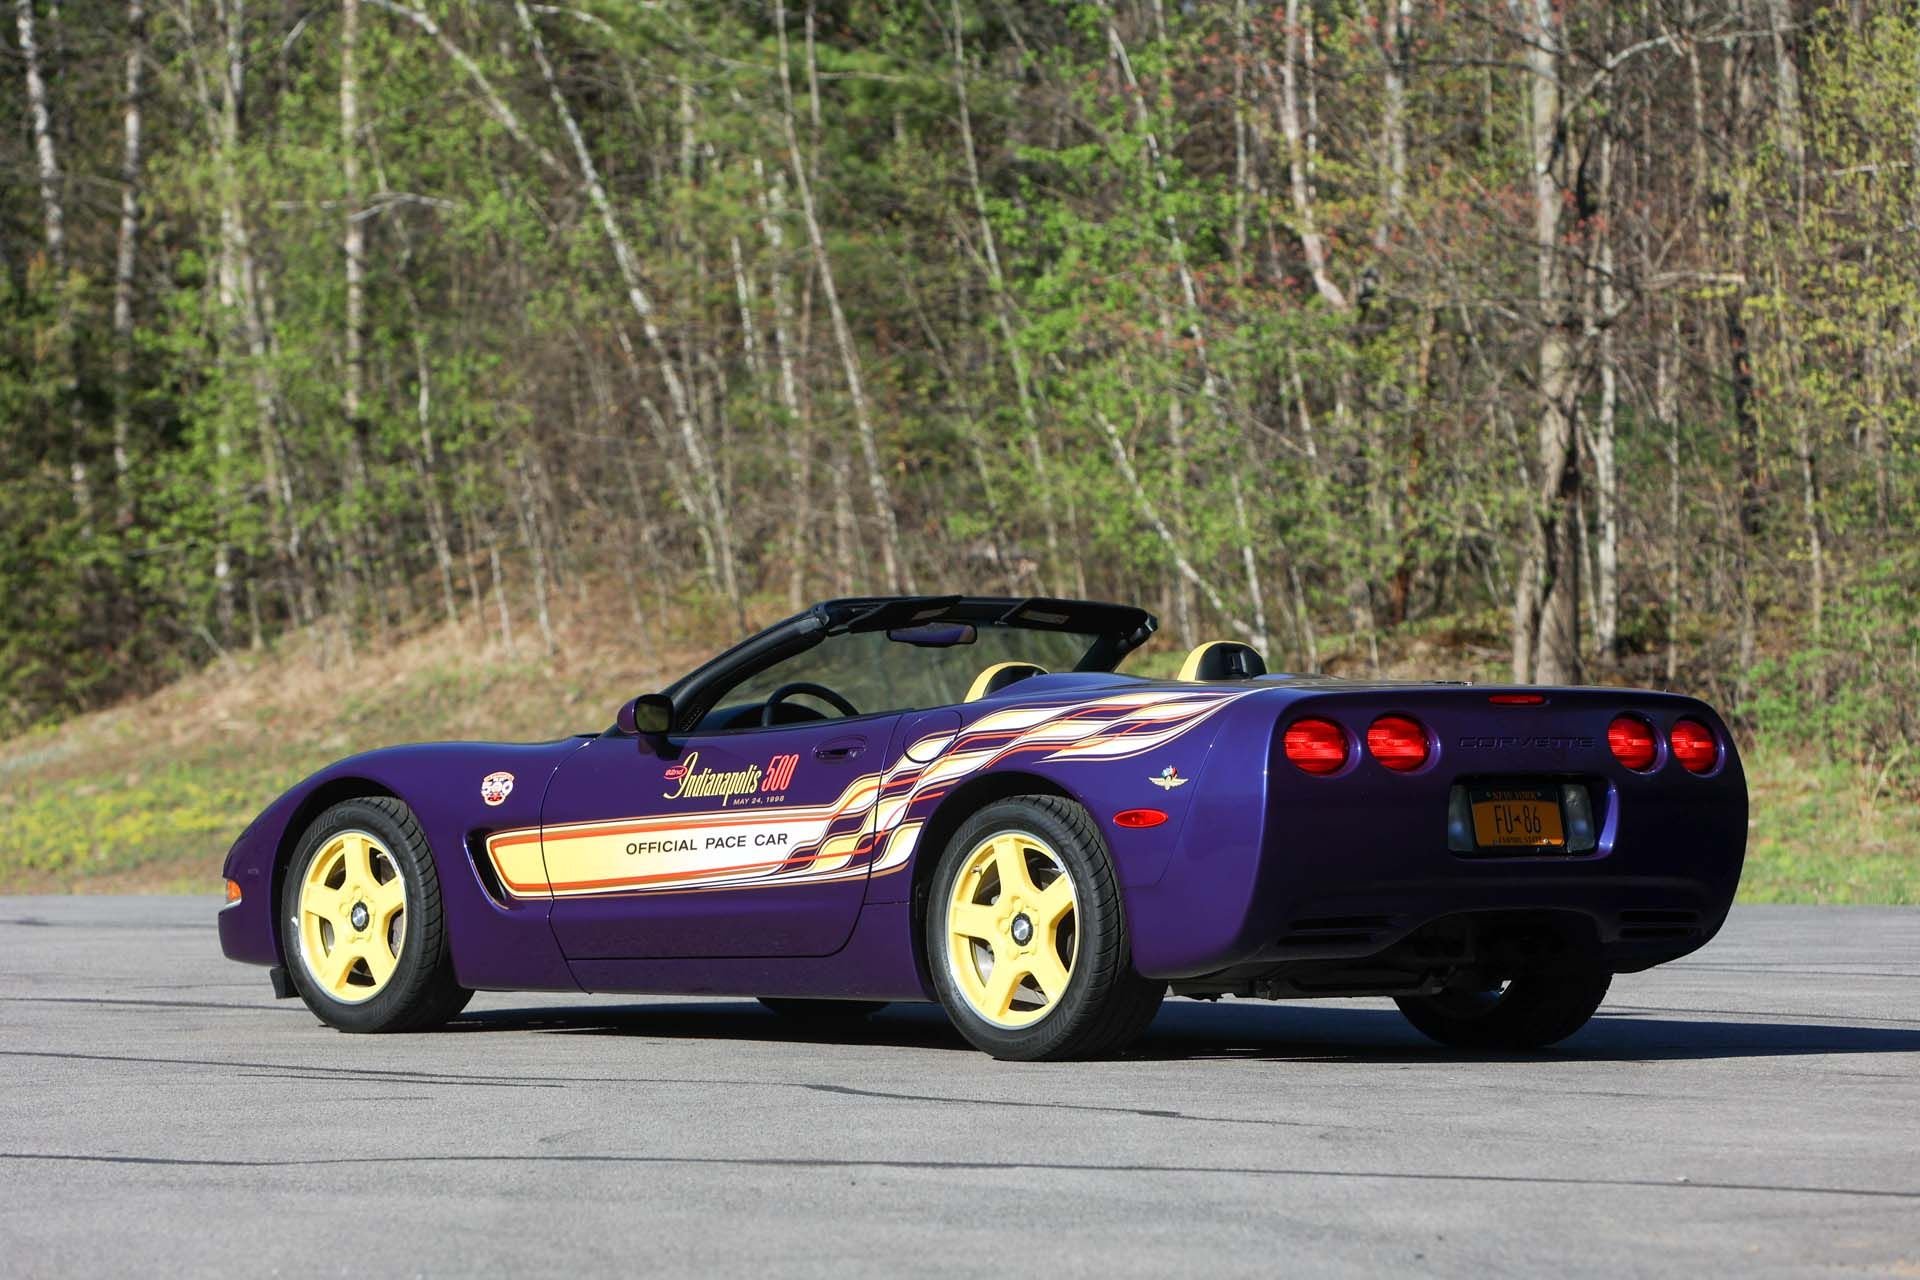 For Sale 1998 Chevrolet Corvette Indianapolis 500 Pace Car Convertible